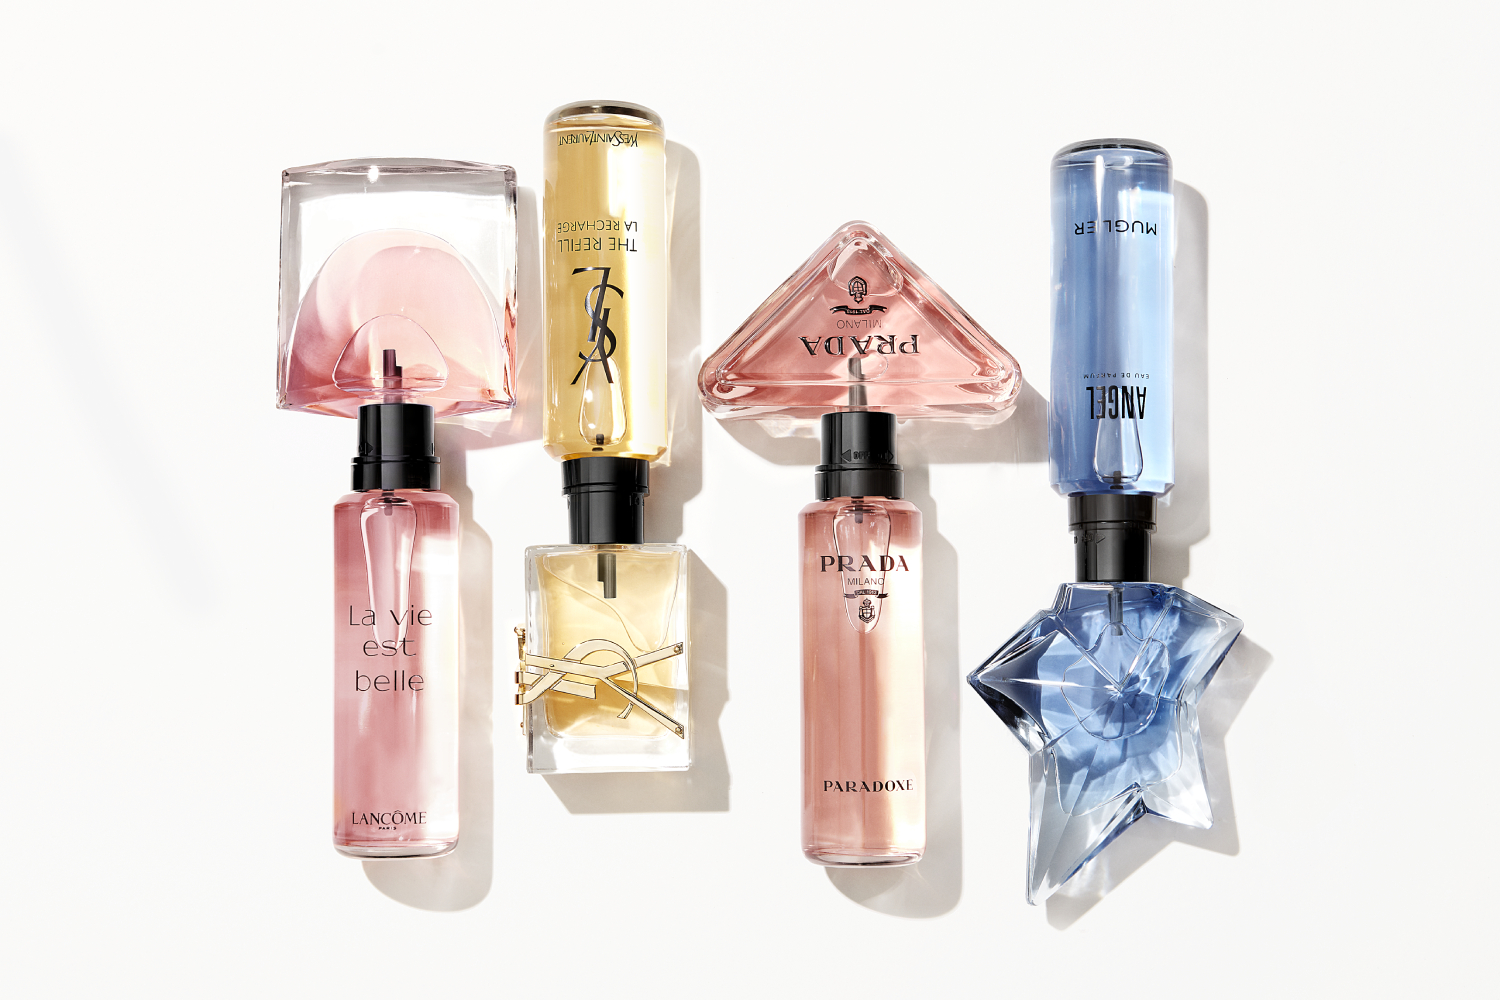 L’Oréal refillable fragrances line-up